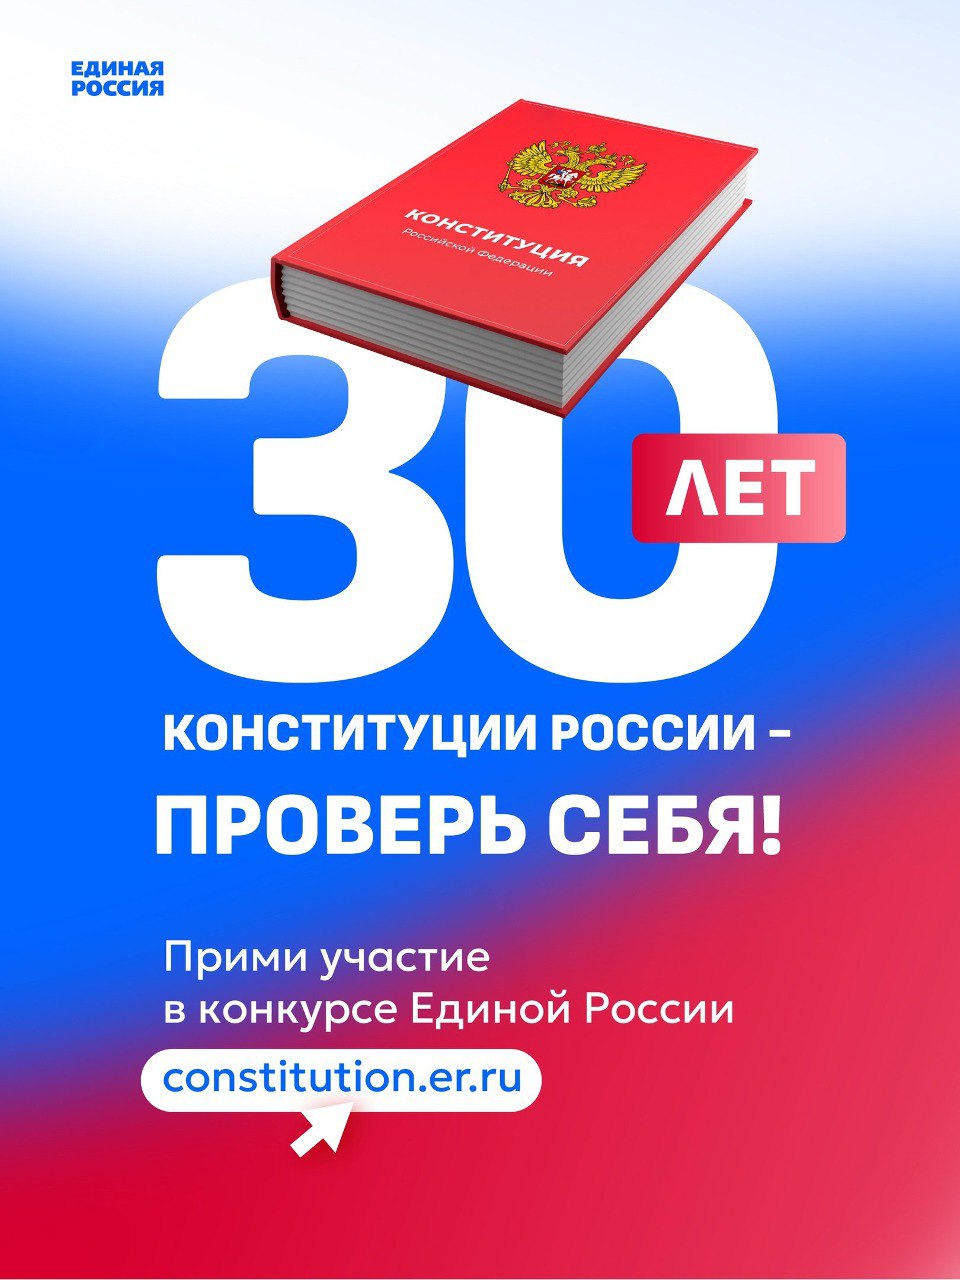 Жители региона могут пройти тест на знание Конституции РФ.